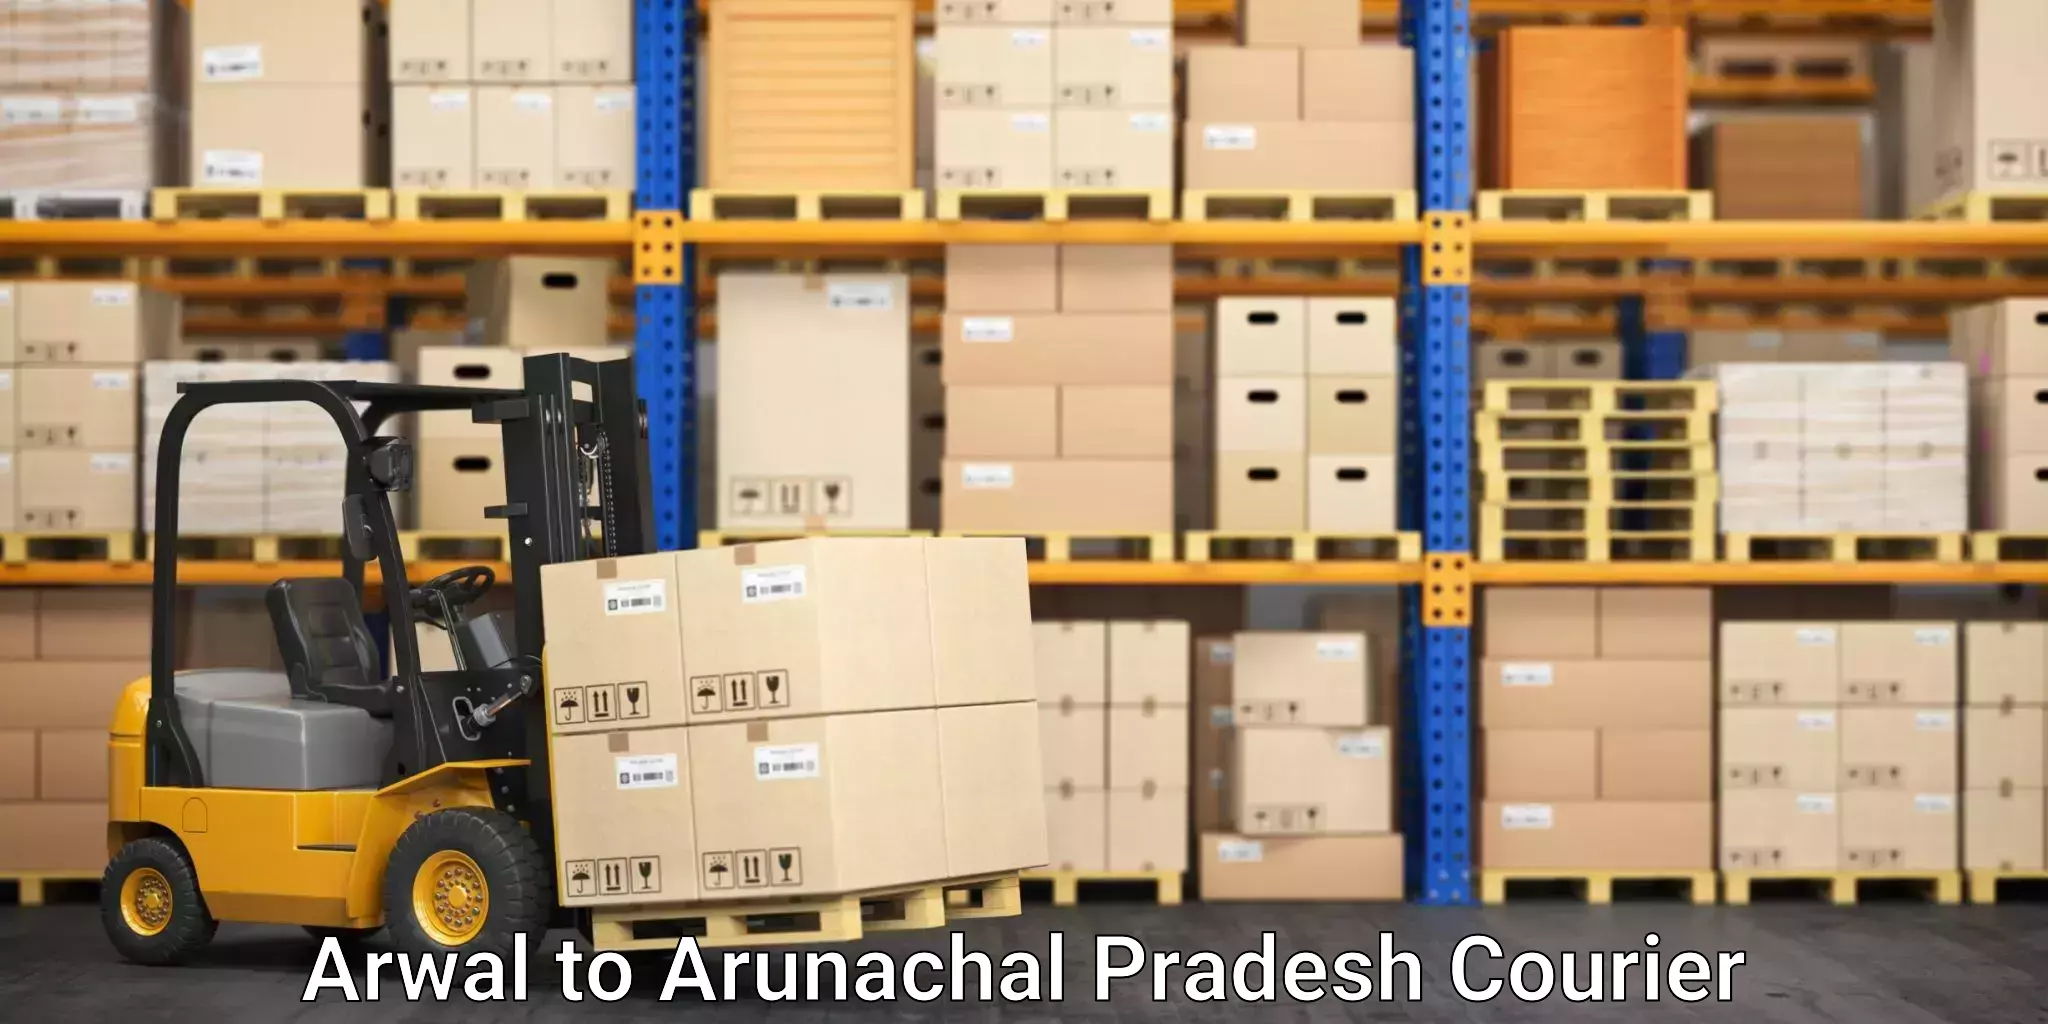 Furniture transport experts Arwal to Arunachal Pradesh